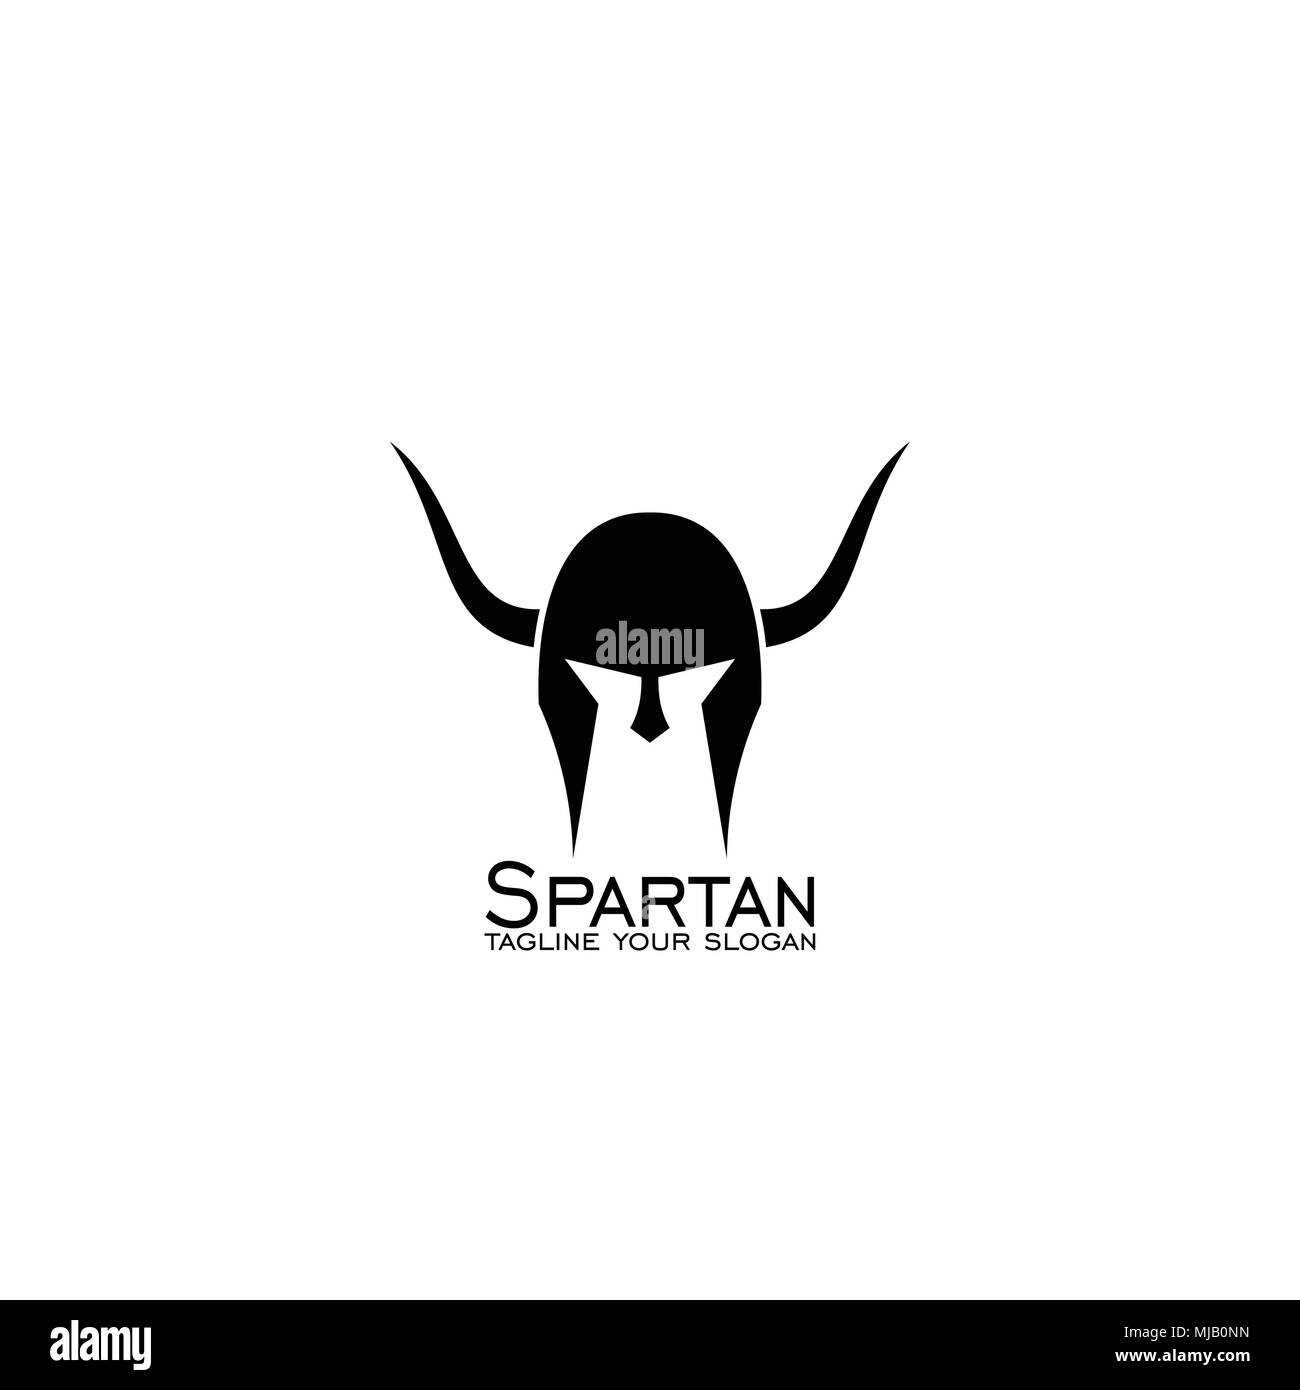 Sparta logo design, spartan helmet concept, vector icons. Stock Vector